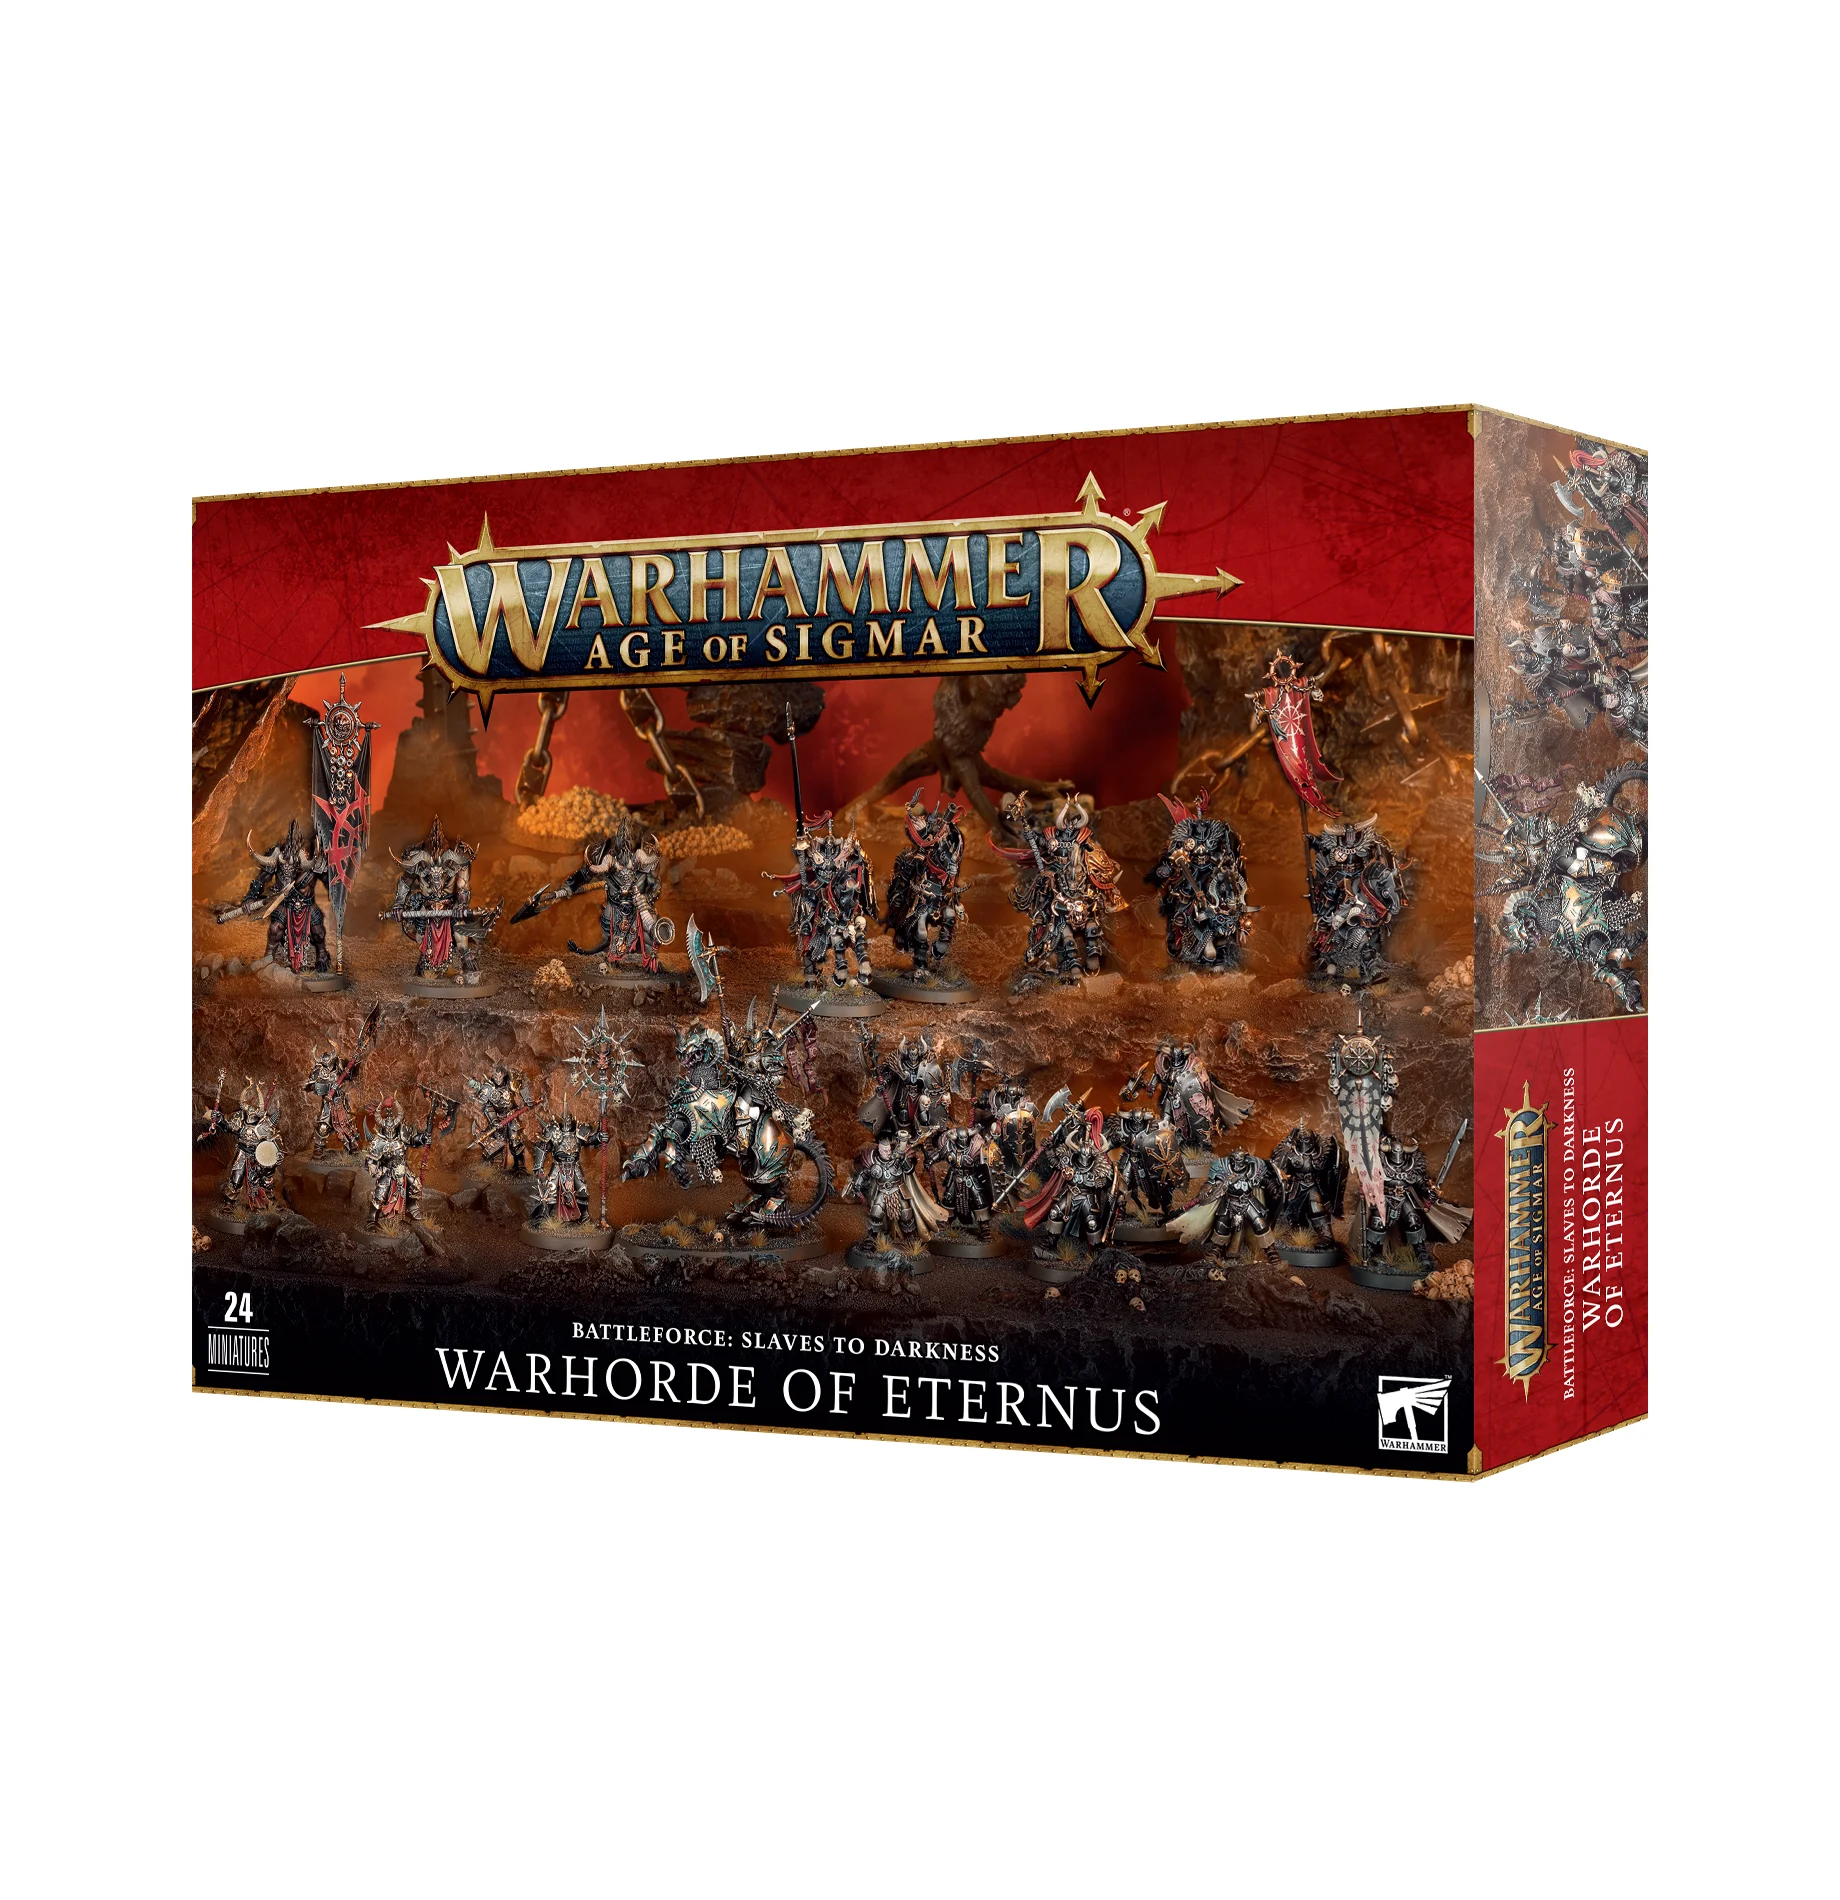 Warhammer Age of Sigmar Battleforce Slave To Darkness Warhorde of Eternus  83-99